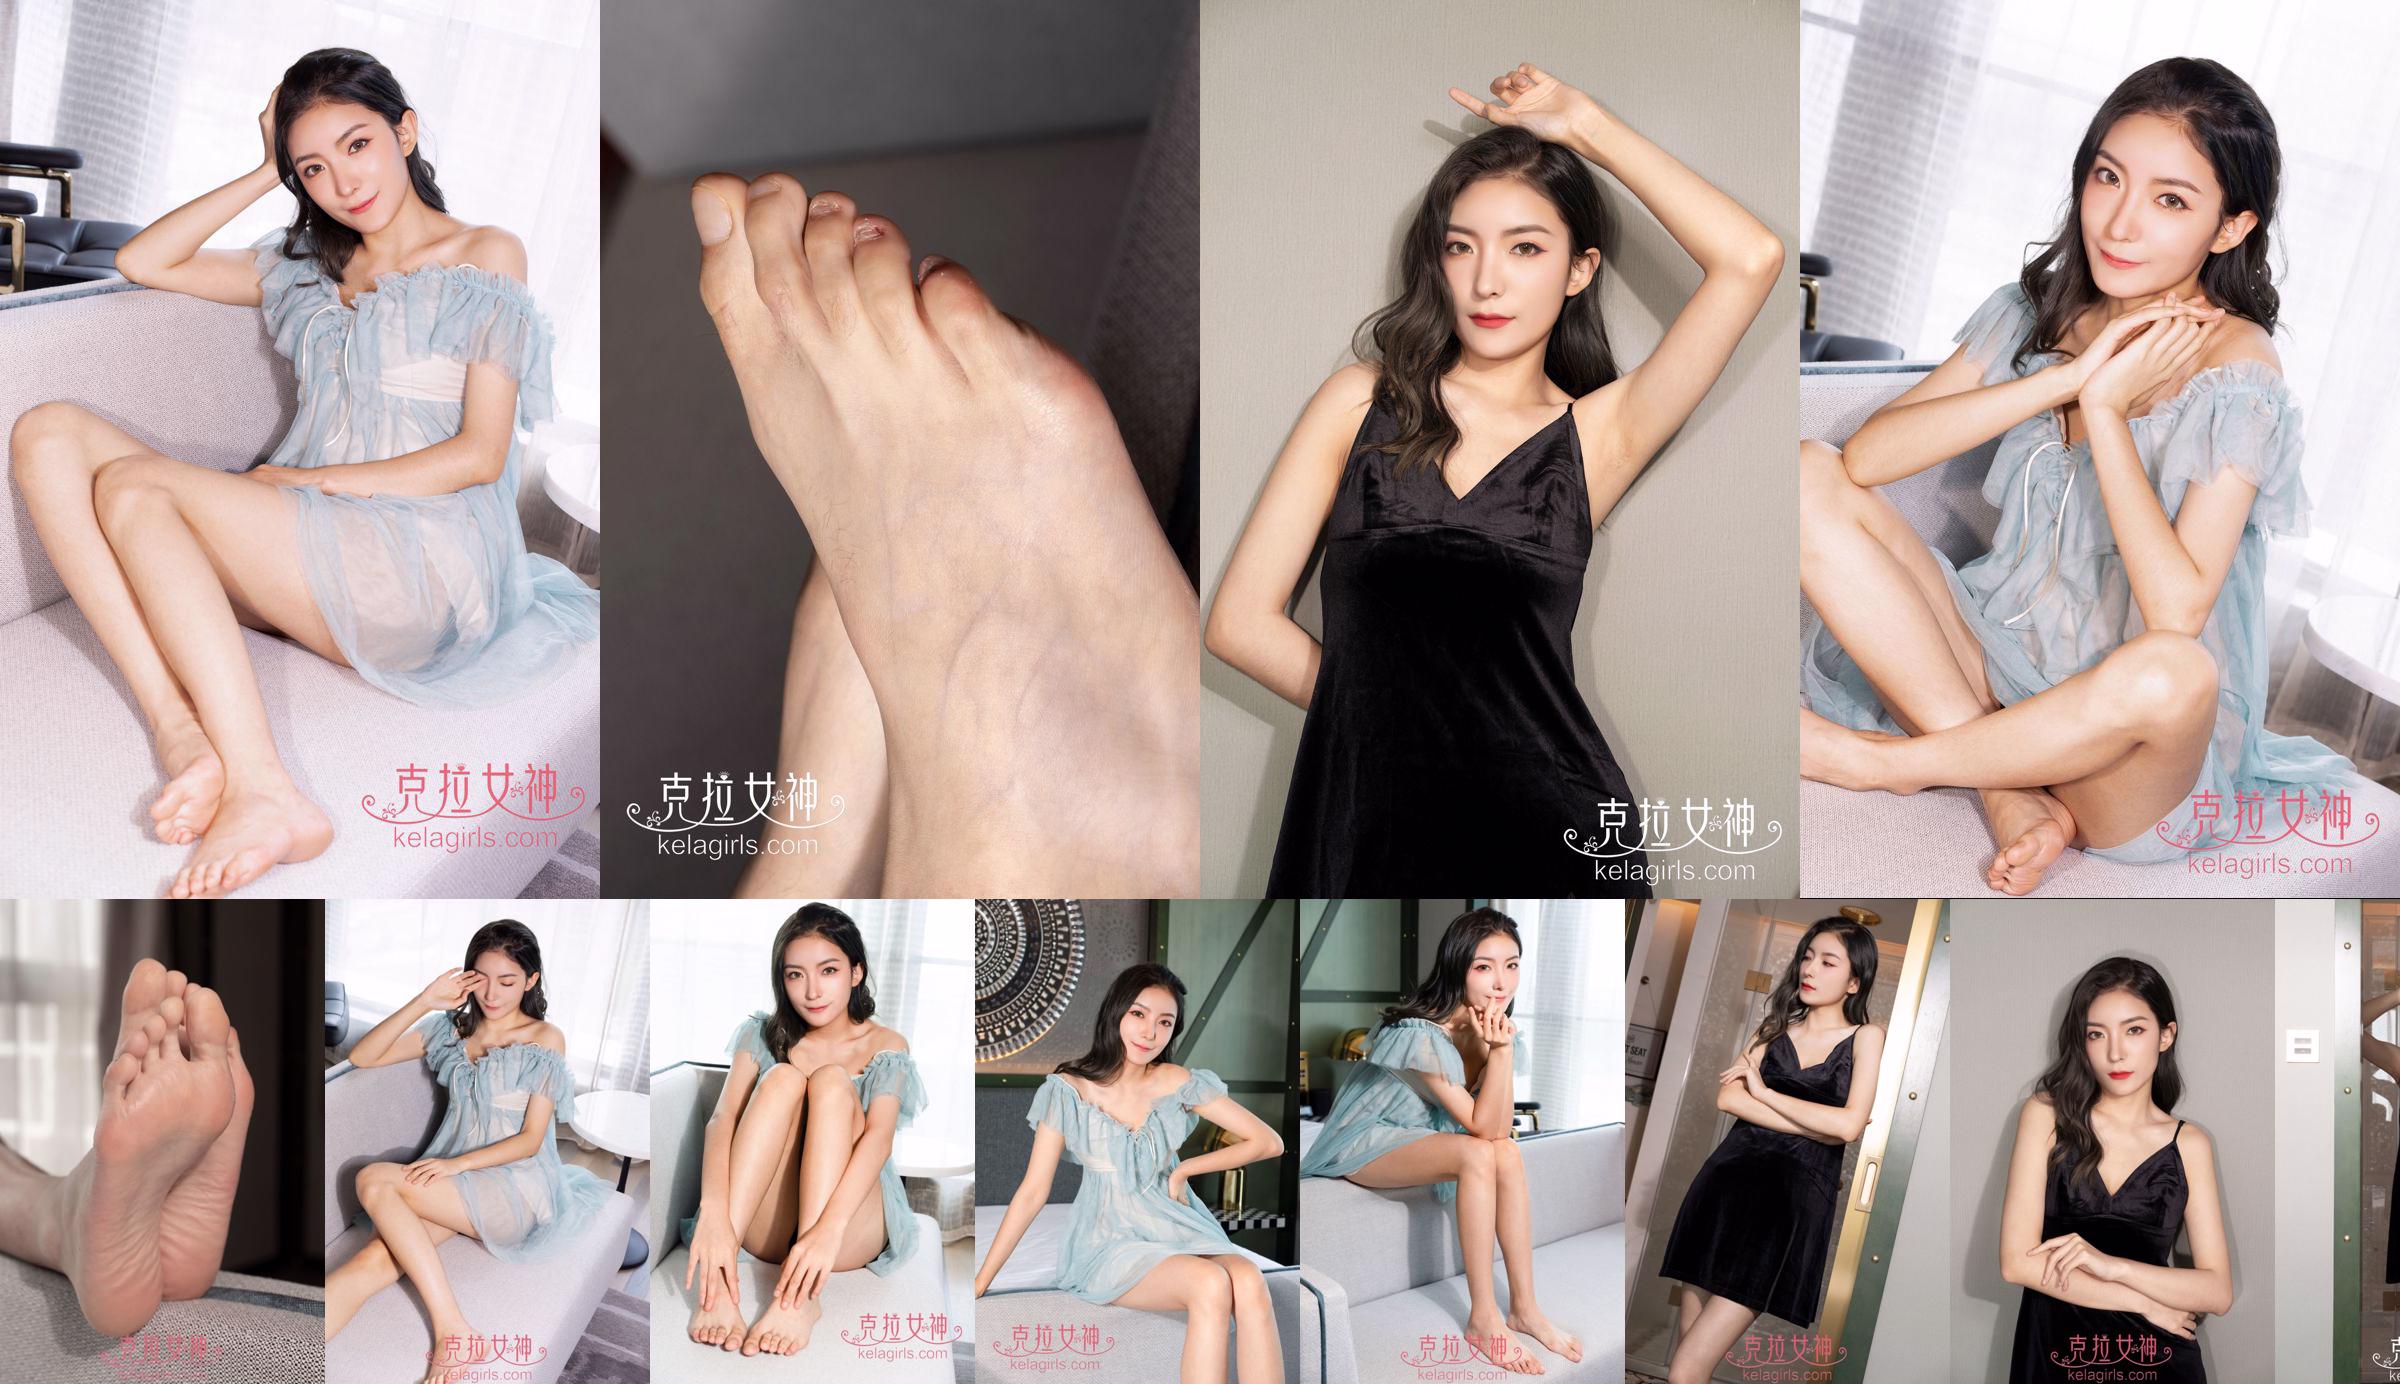 [Kelagirls] Su Zhan "Ladies Barefoot" No.652283 Halaman 1